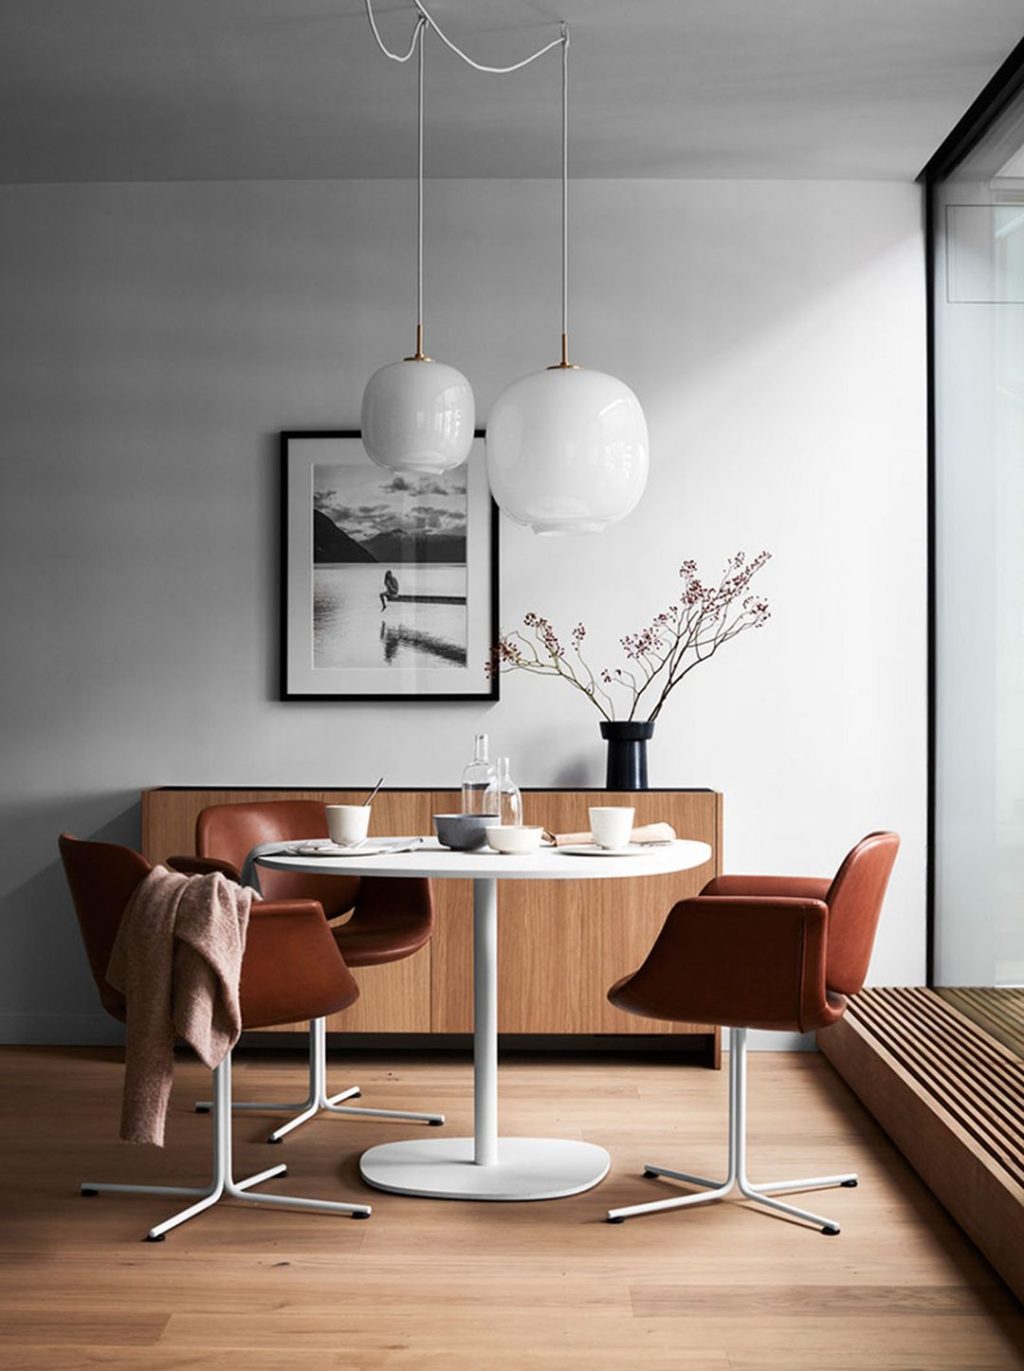 Minimalist Dining Room Design Ideas